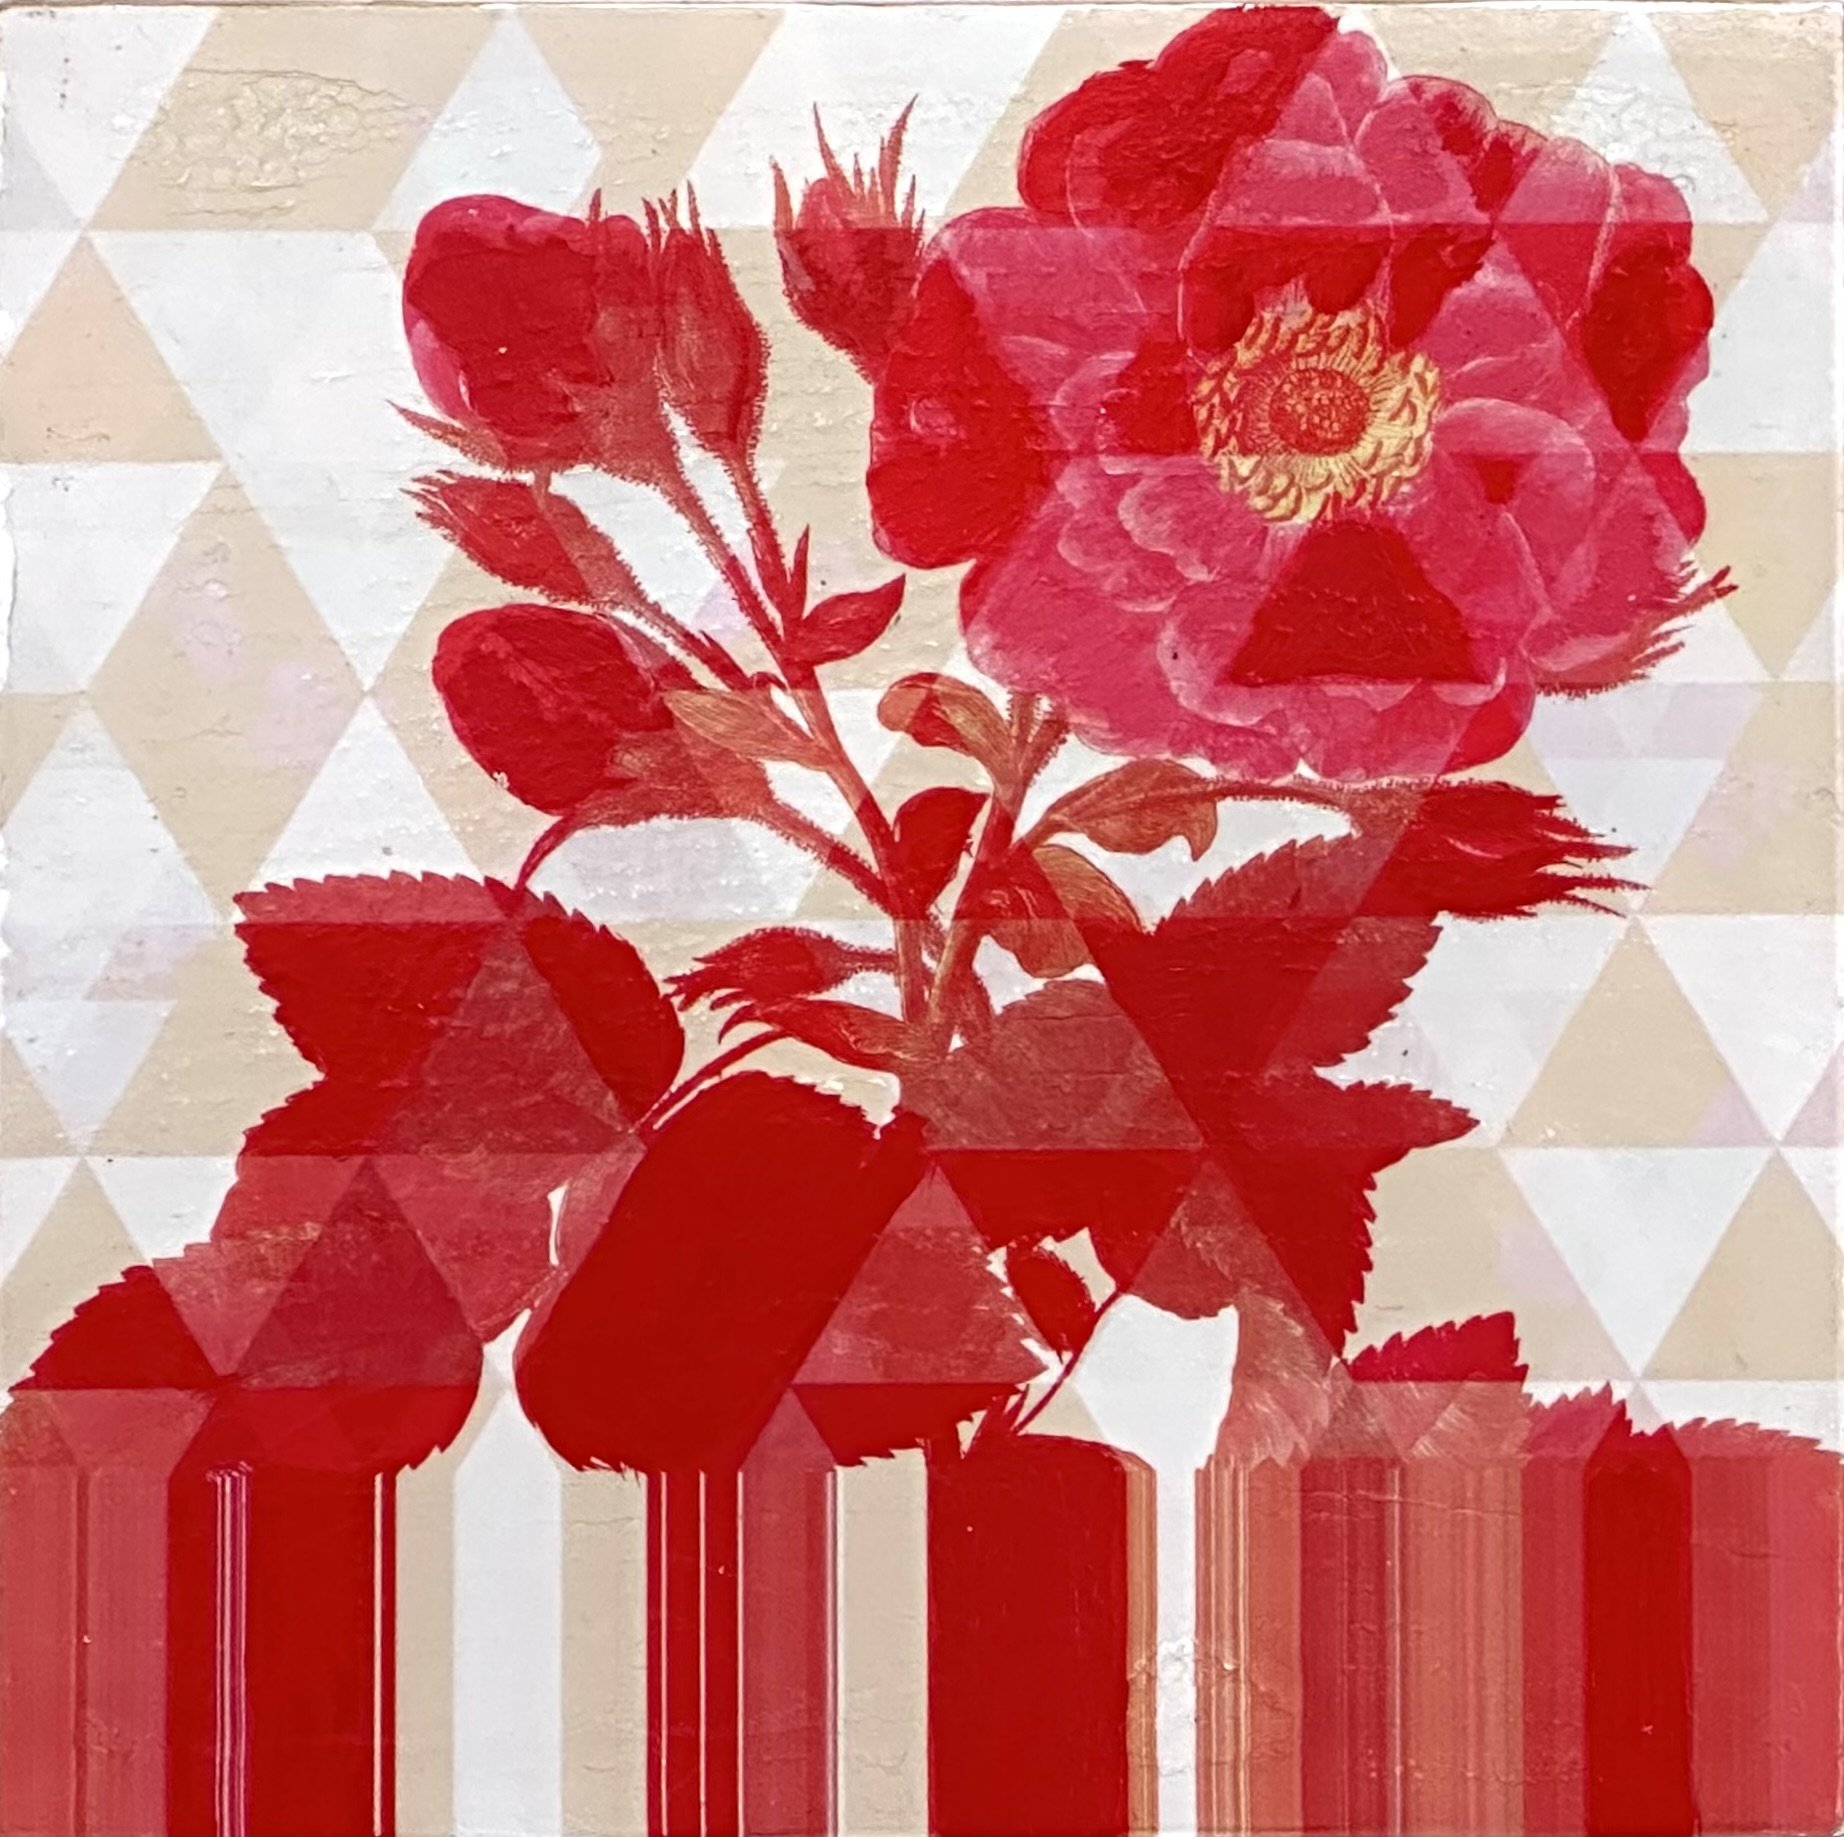 Rose Intersection by Karen Olsen-Dunn